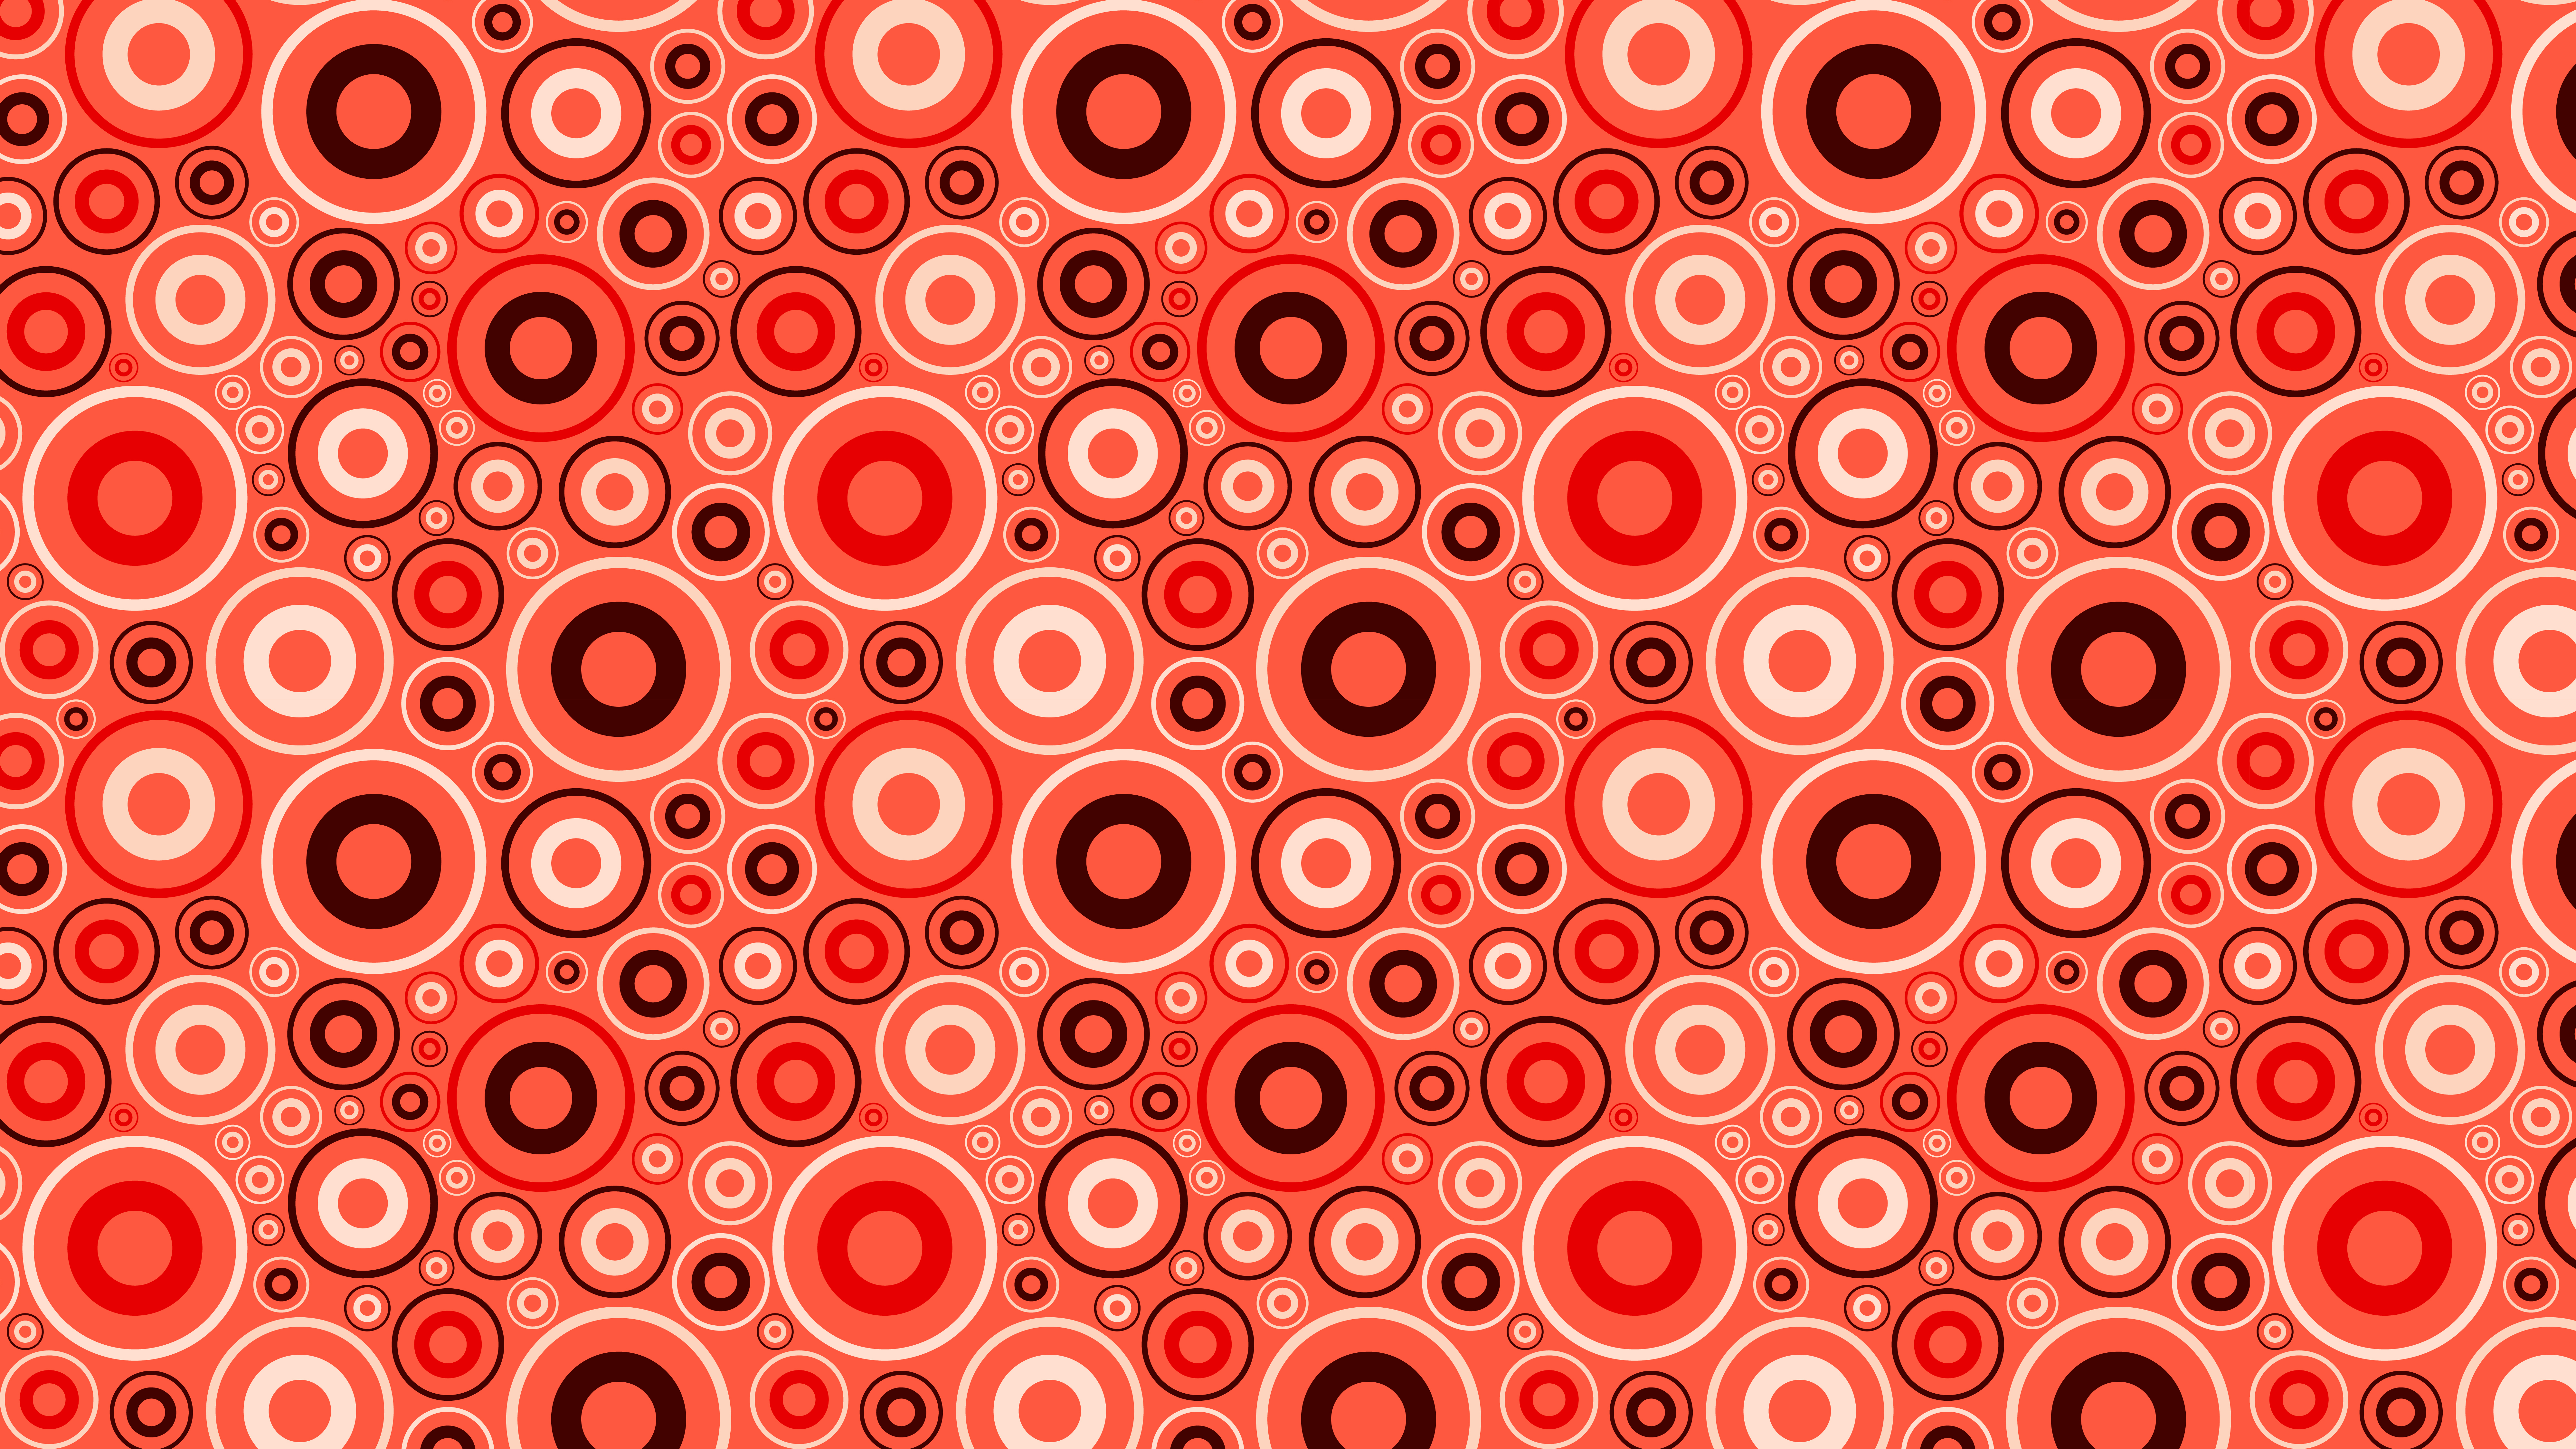 Download Red Background Wallpaper RoyaltyFree Stock Illustration Image   Pixabay